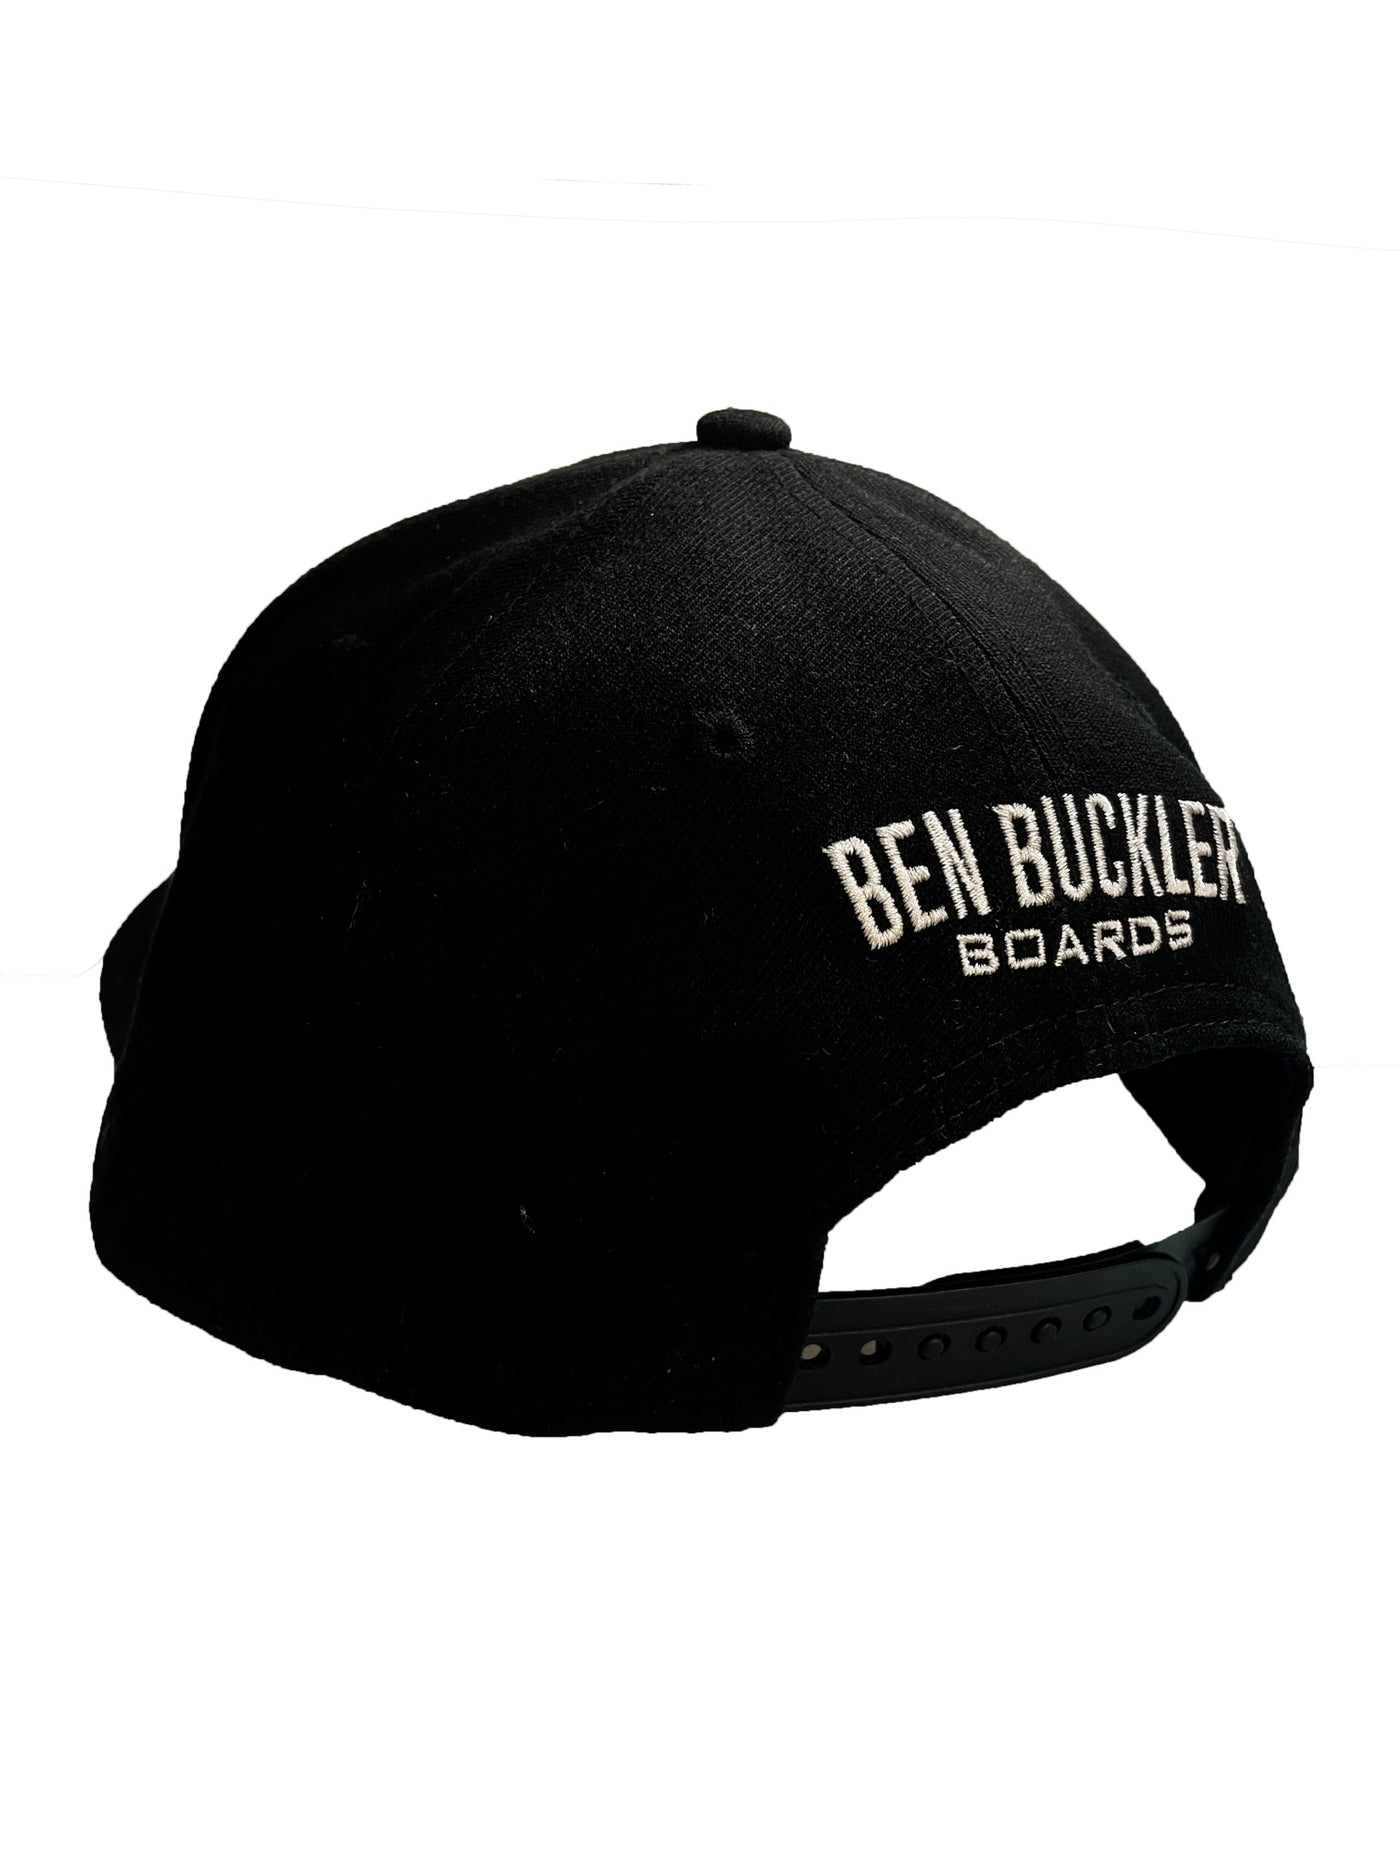 Black Ben Buckler Boards Cap back view